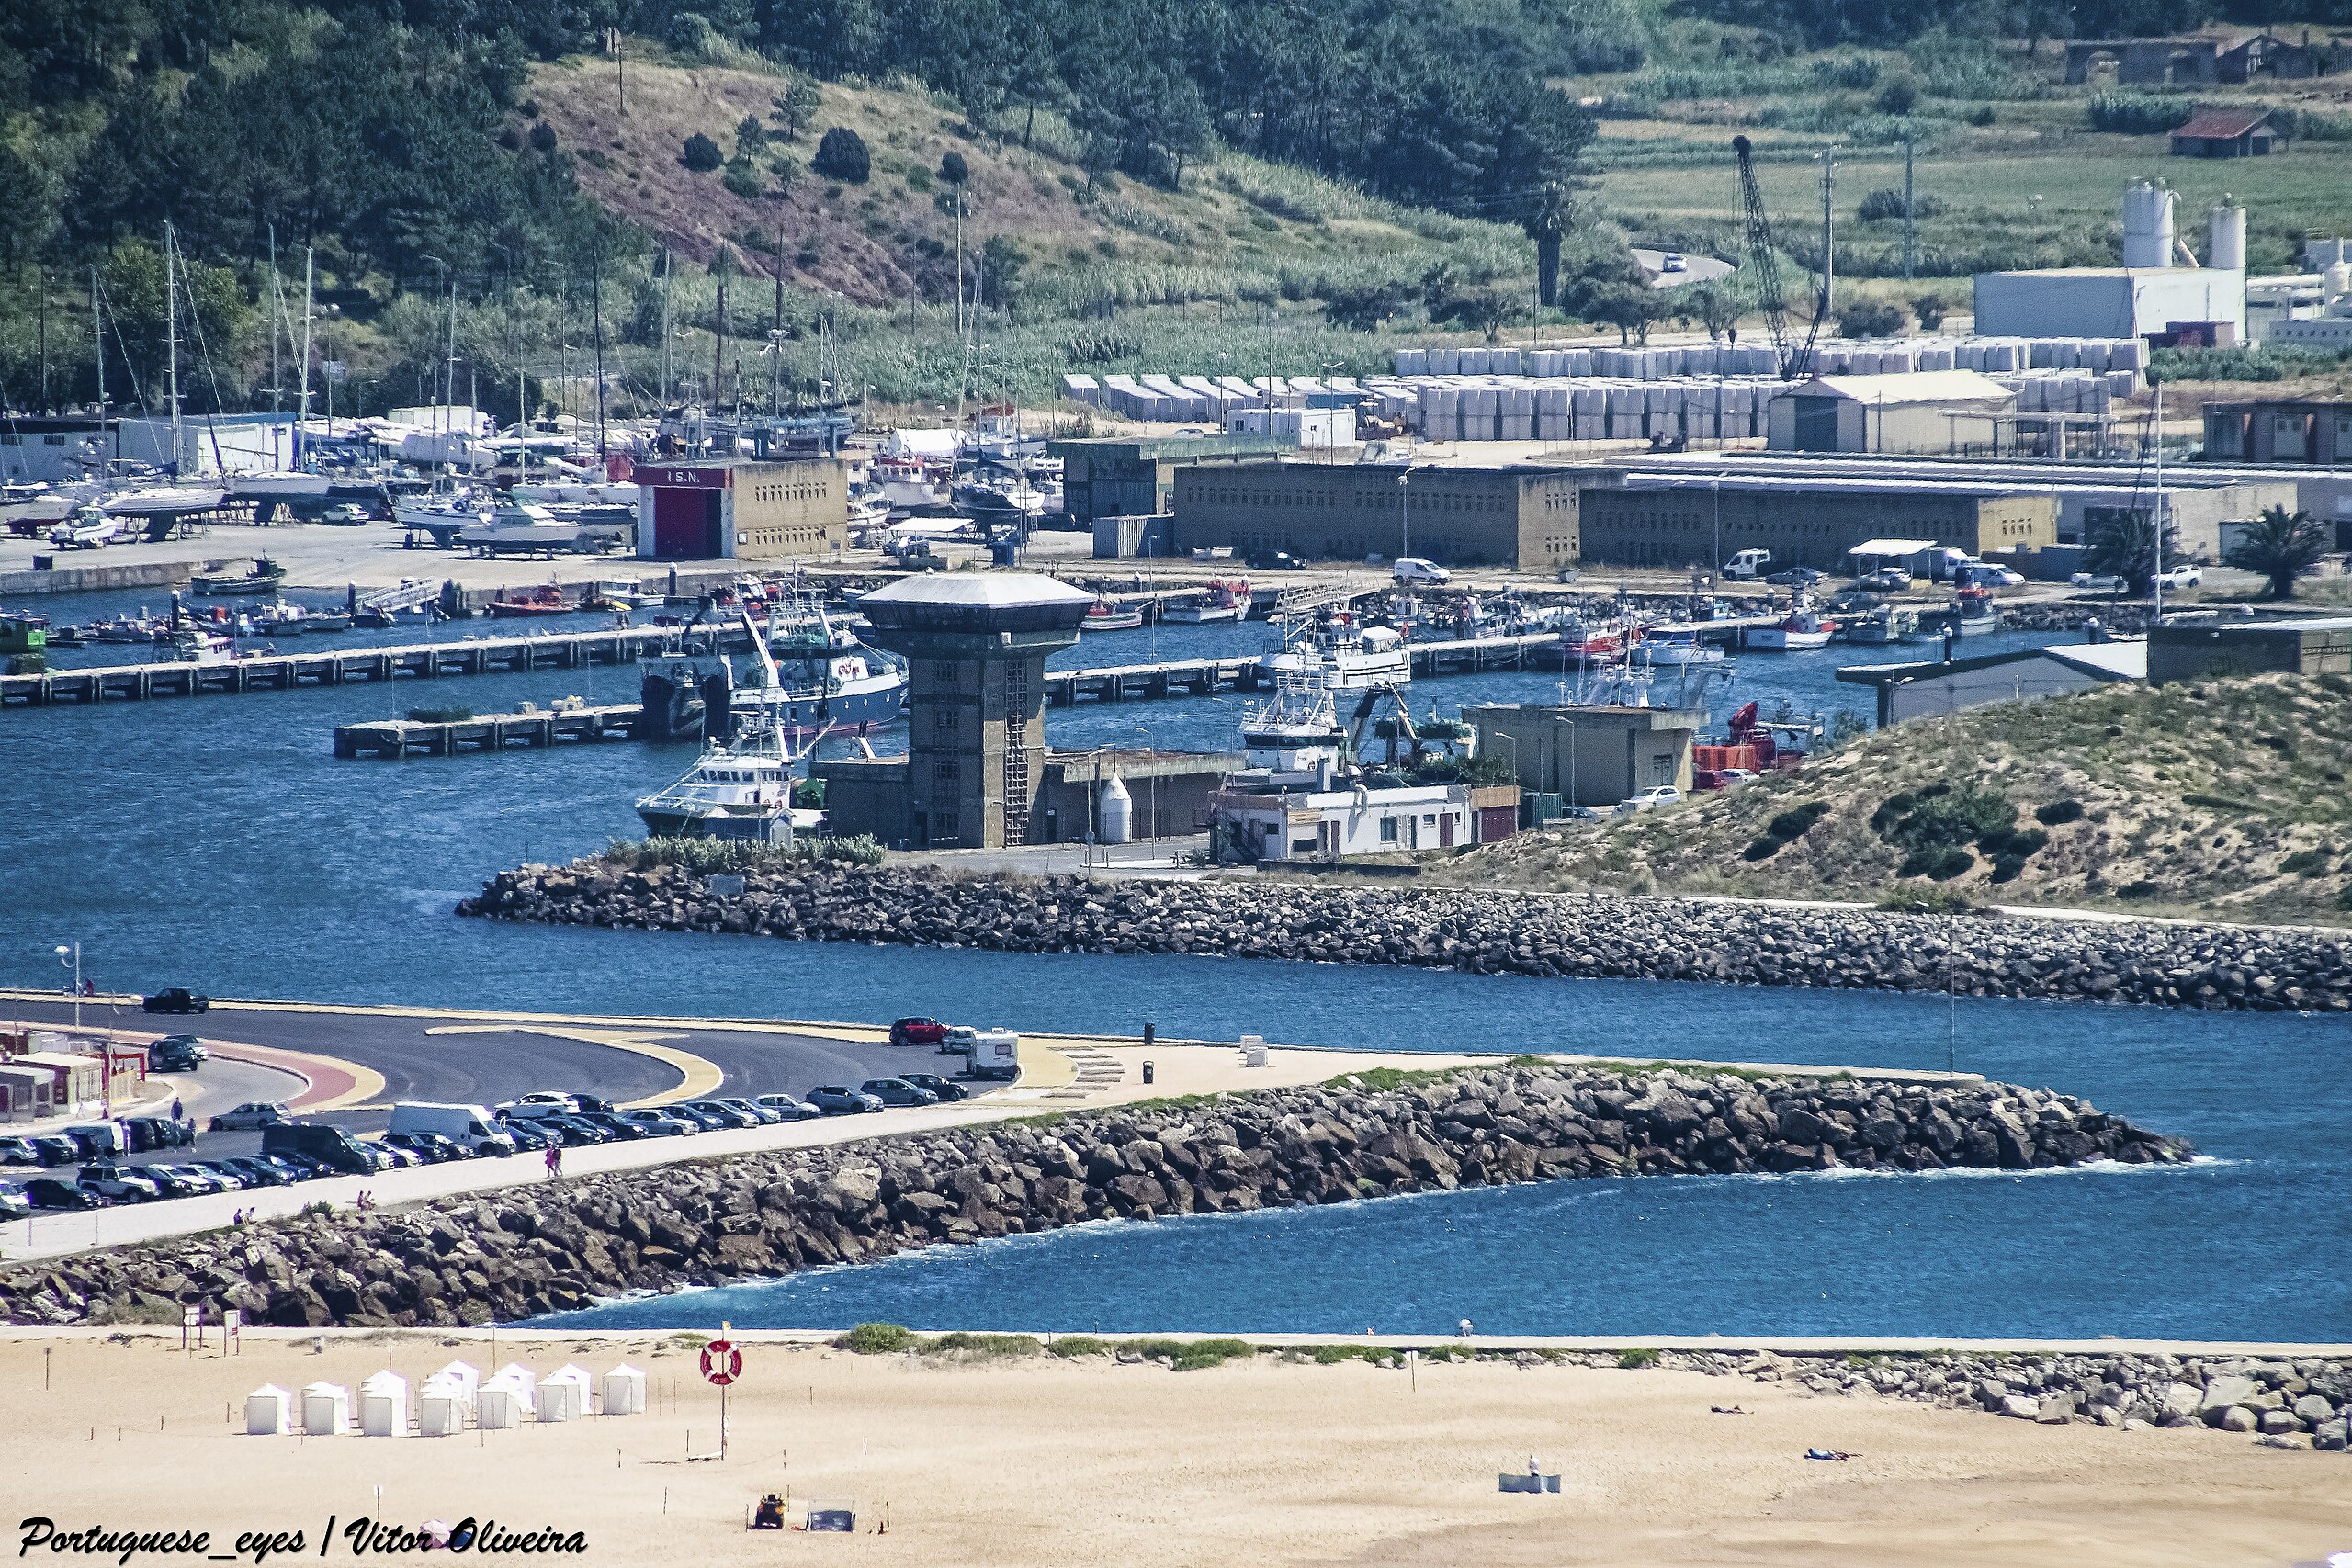 File:Porto da Nazaré - Portugal (52025147183).jpg - Wikimedia Commons